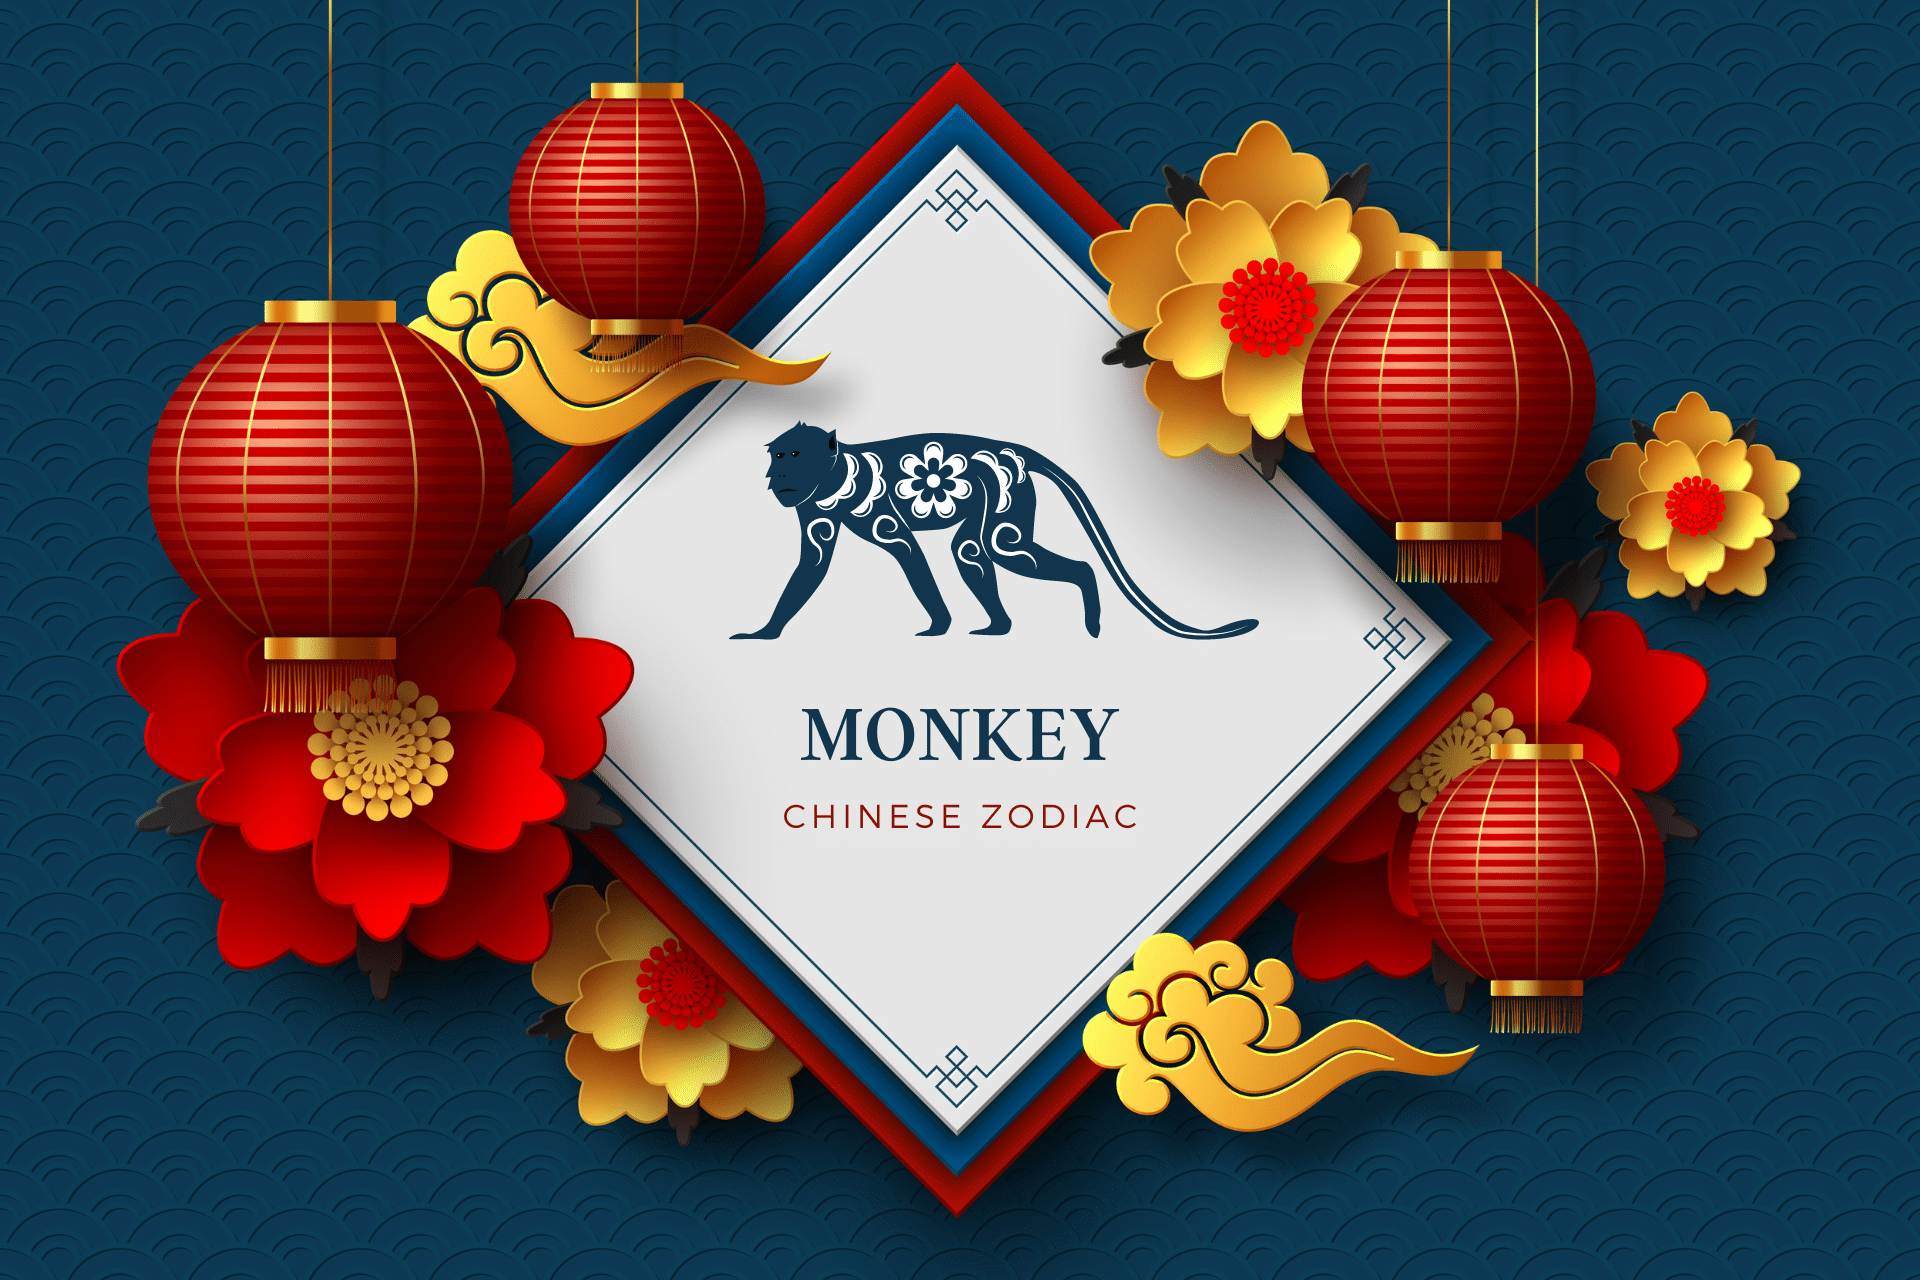 Monkey Chinese Zodiac sign